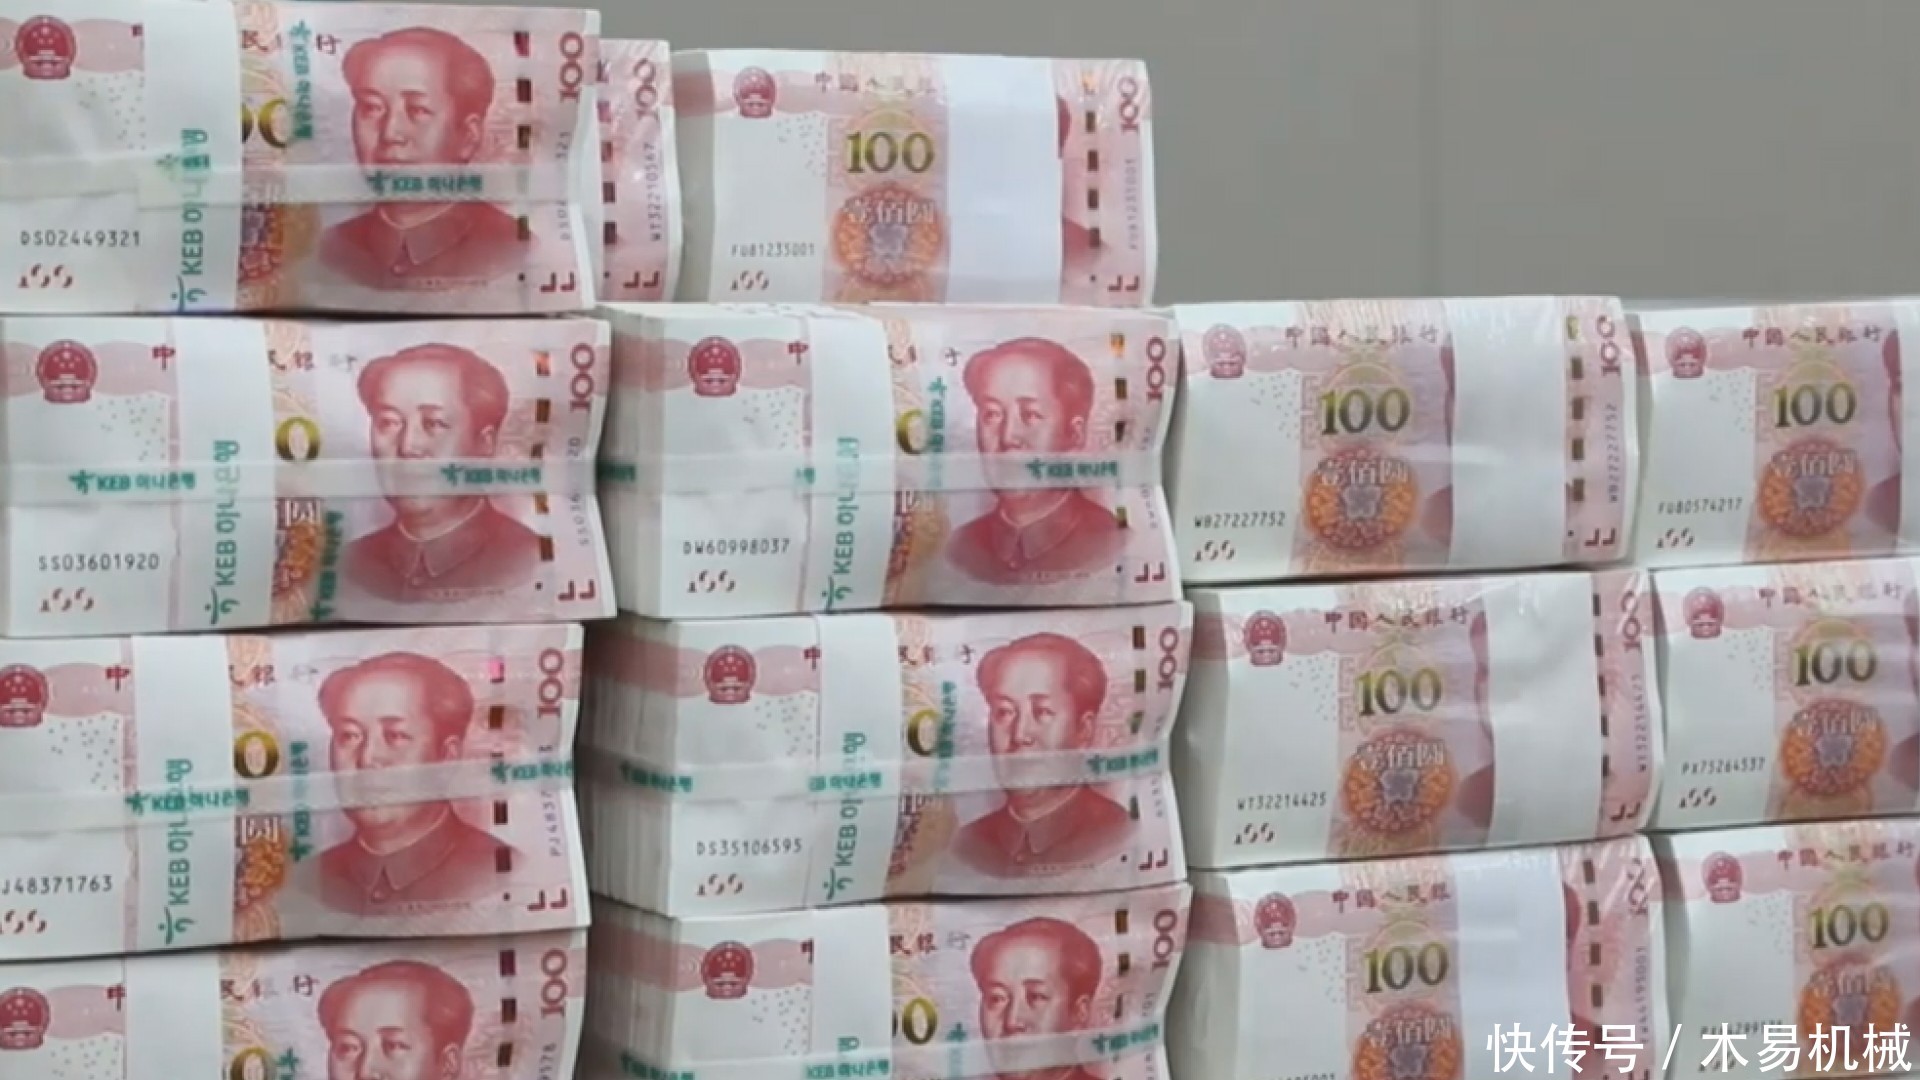 中国人称美国钱为美金,看老外是如何称呼